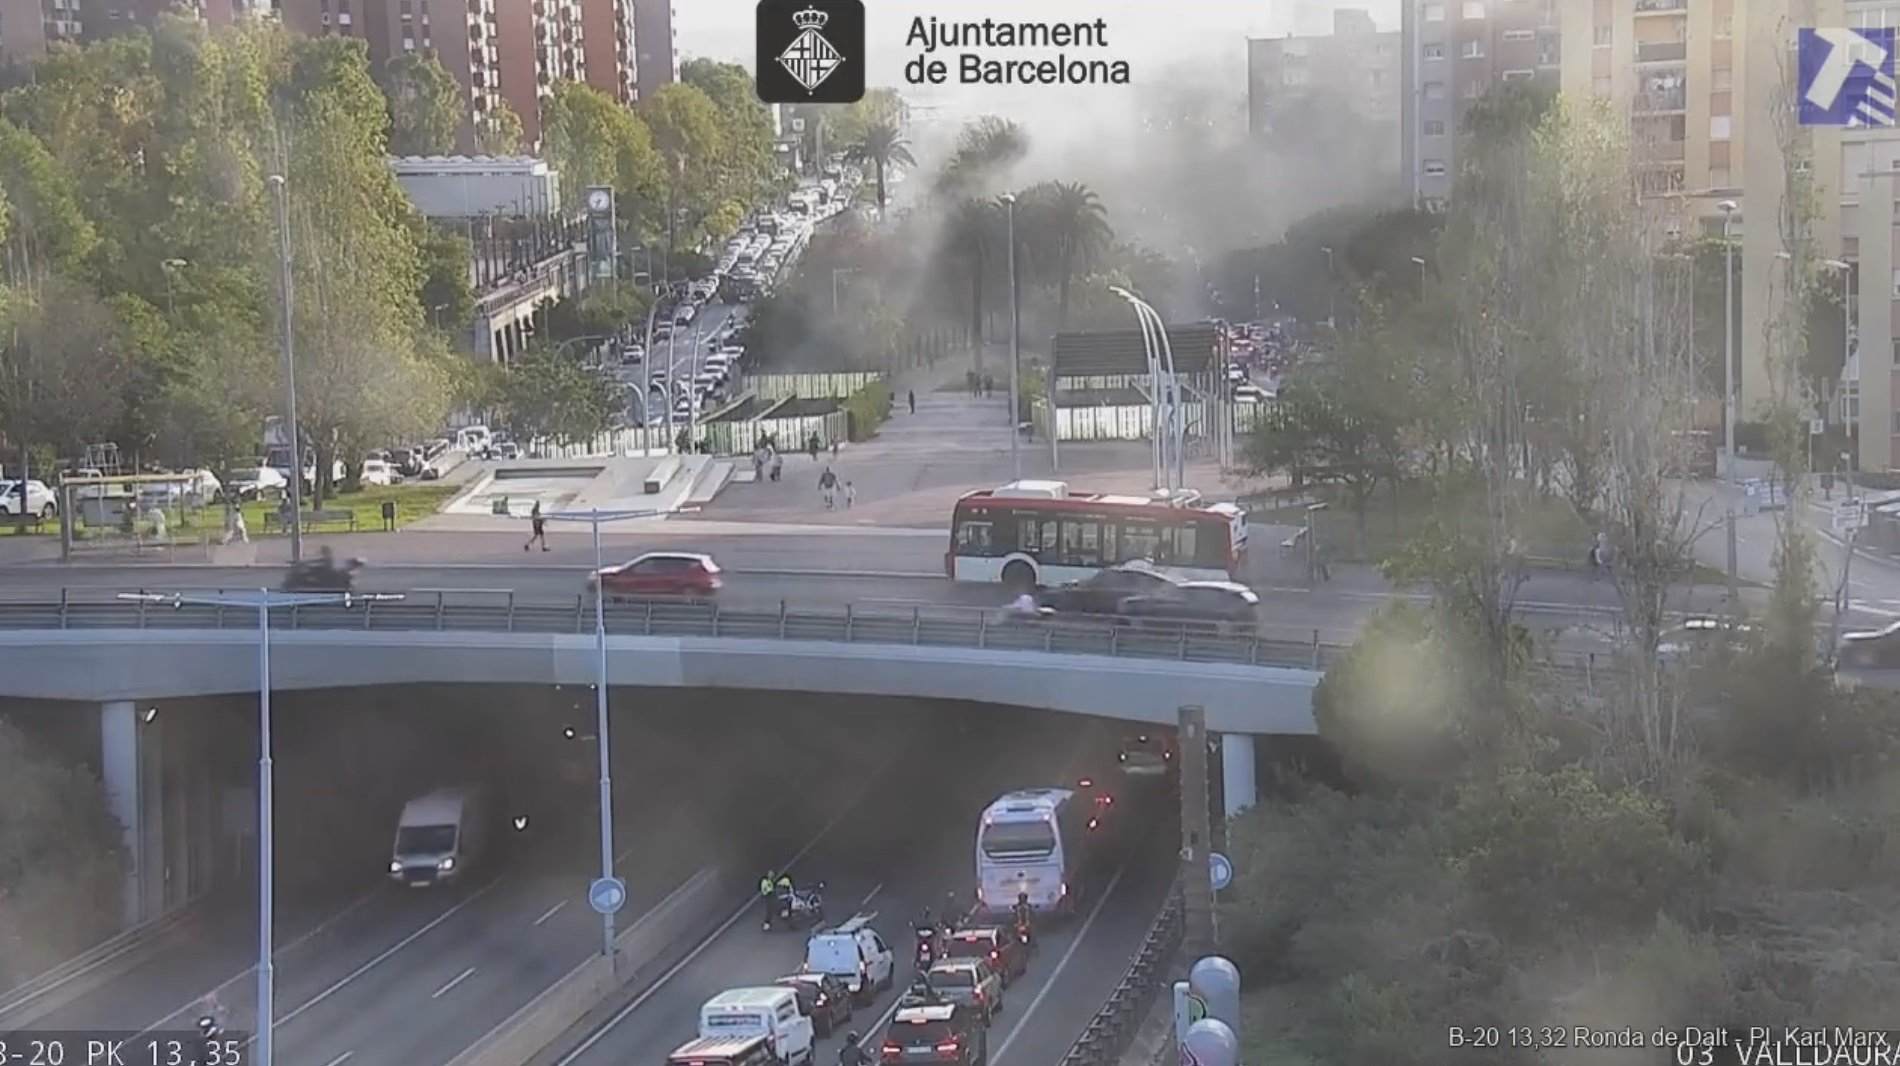 L'espectacular incendi d'un camió a la ronda de Dalt avui a Barcelona | VÍDEO